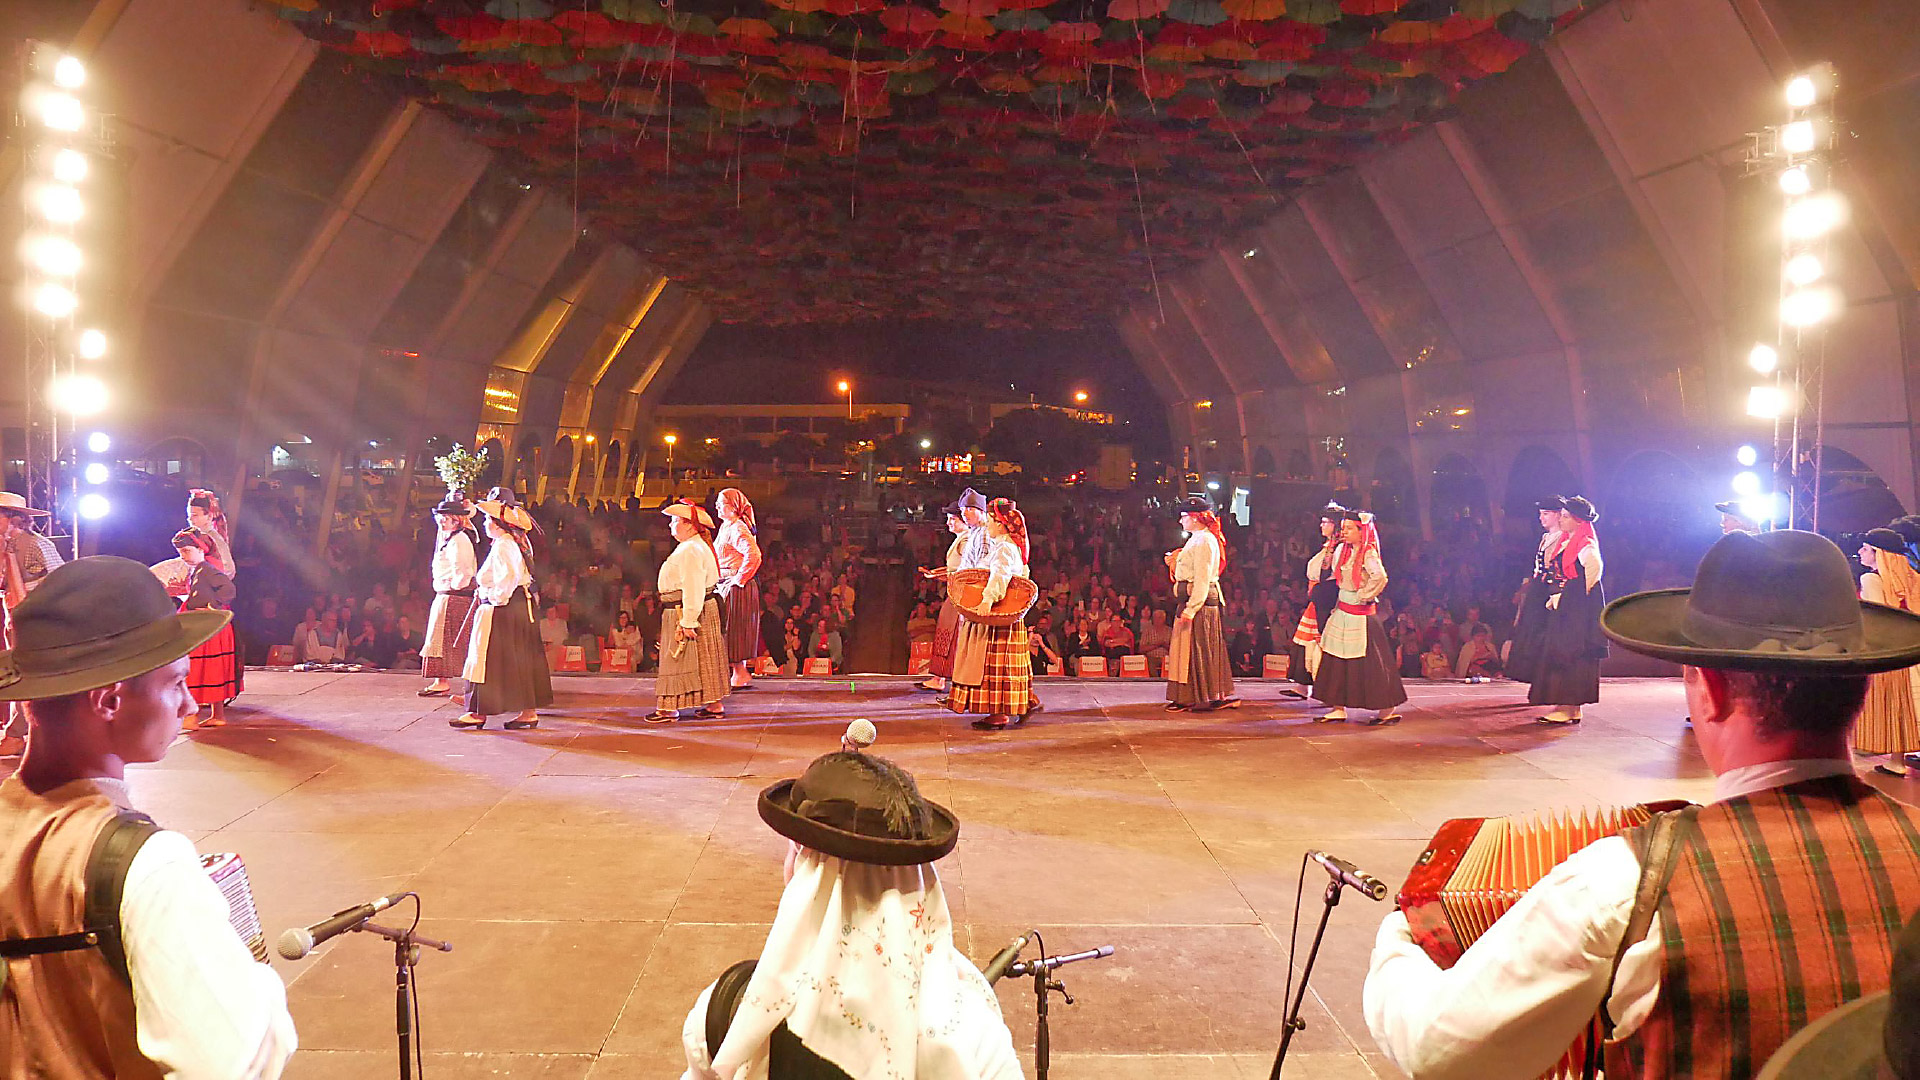 Festival Internacional une povos de várias nacionalidades através da dança